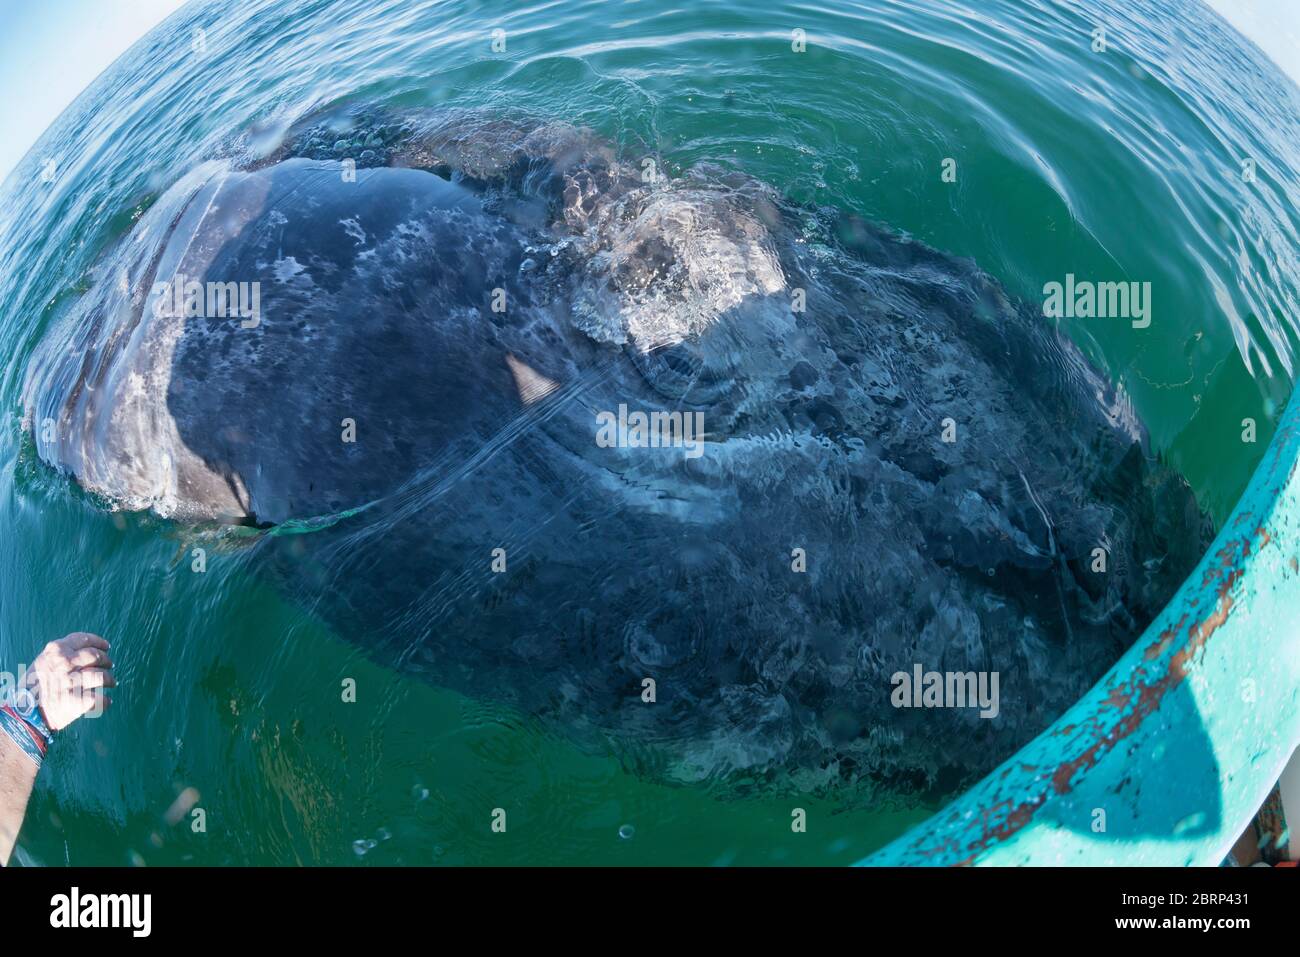 Il vitello di balena grigio, Eschrichtius robusta, rotola sopra per guardare in su i visitatori in barca, la Laguna di San Ignacio, la Riserva della Biosfera di El Vizcaino, Baja, Messico Foto Stock